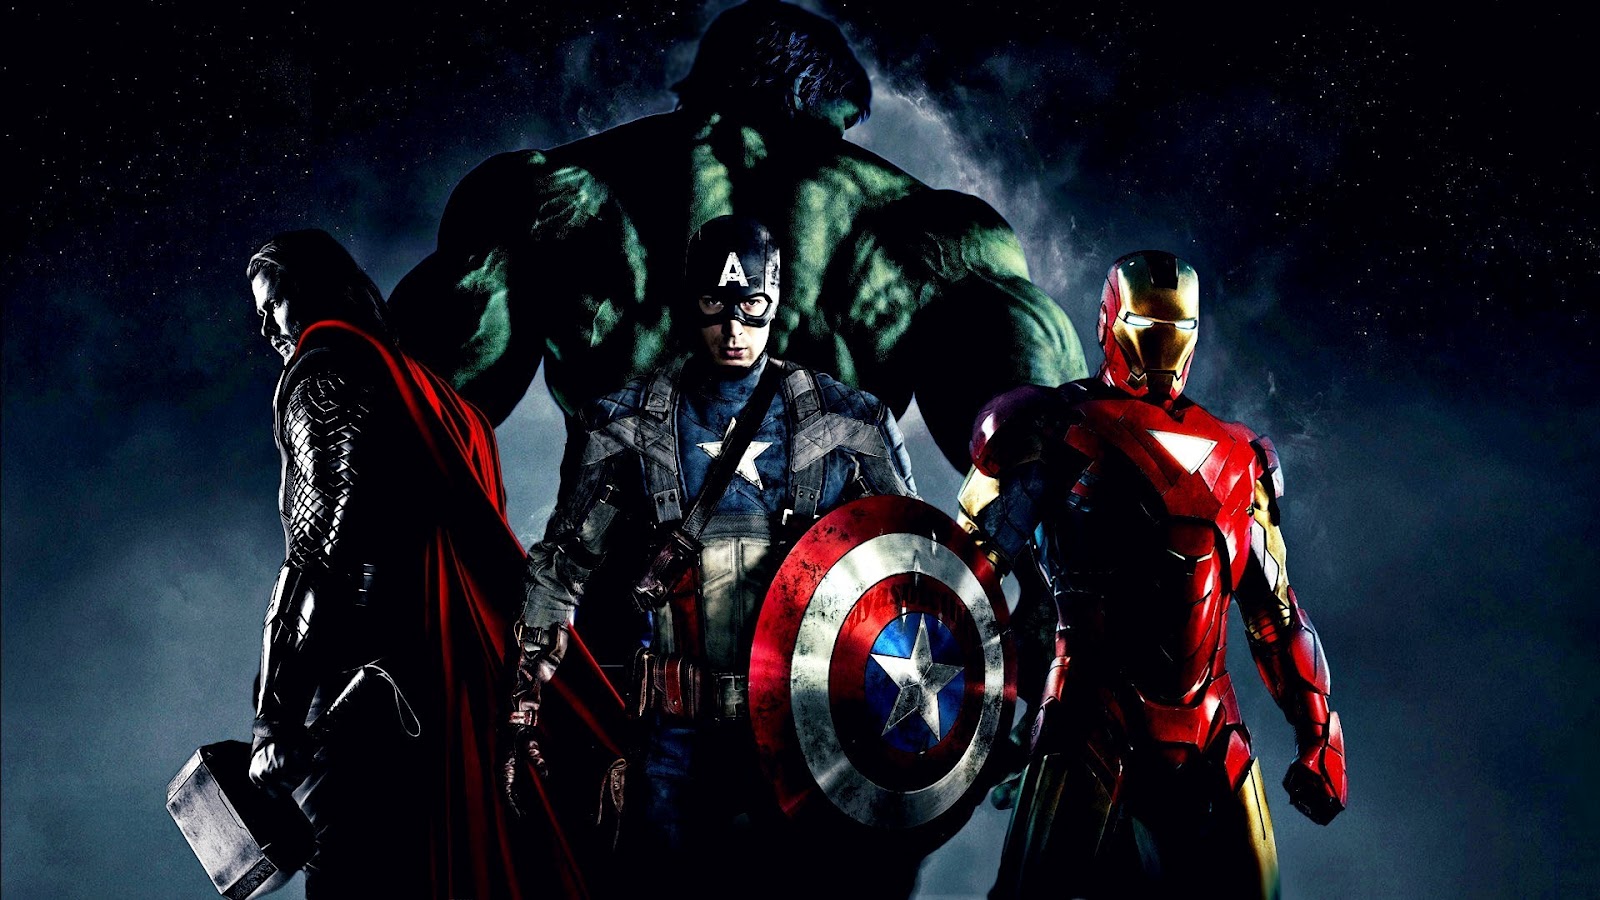 http://4.bp.blogspot.com/-TN6PYdykYLg/T5r9DrTXddI/AAAAAAAABcE/9WfUWRWFx3s/s1600/The_Avengers_2012_Thor_Captain_America_Hulk_and_Iron_Man_HD_Wallpaper-Vvallpaper.Net.jpg